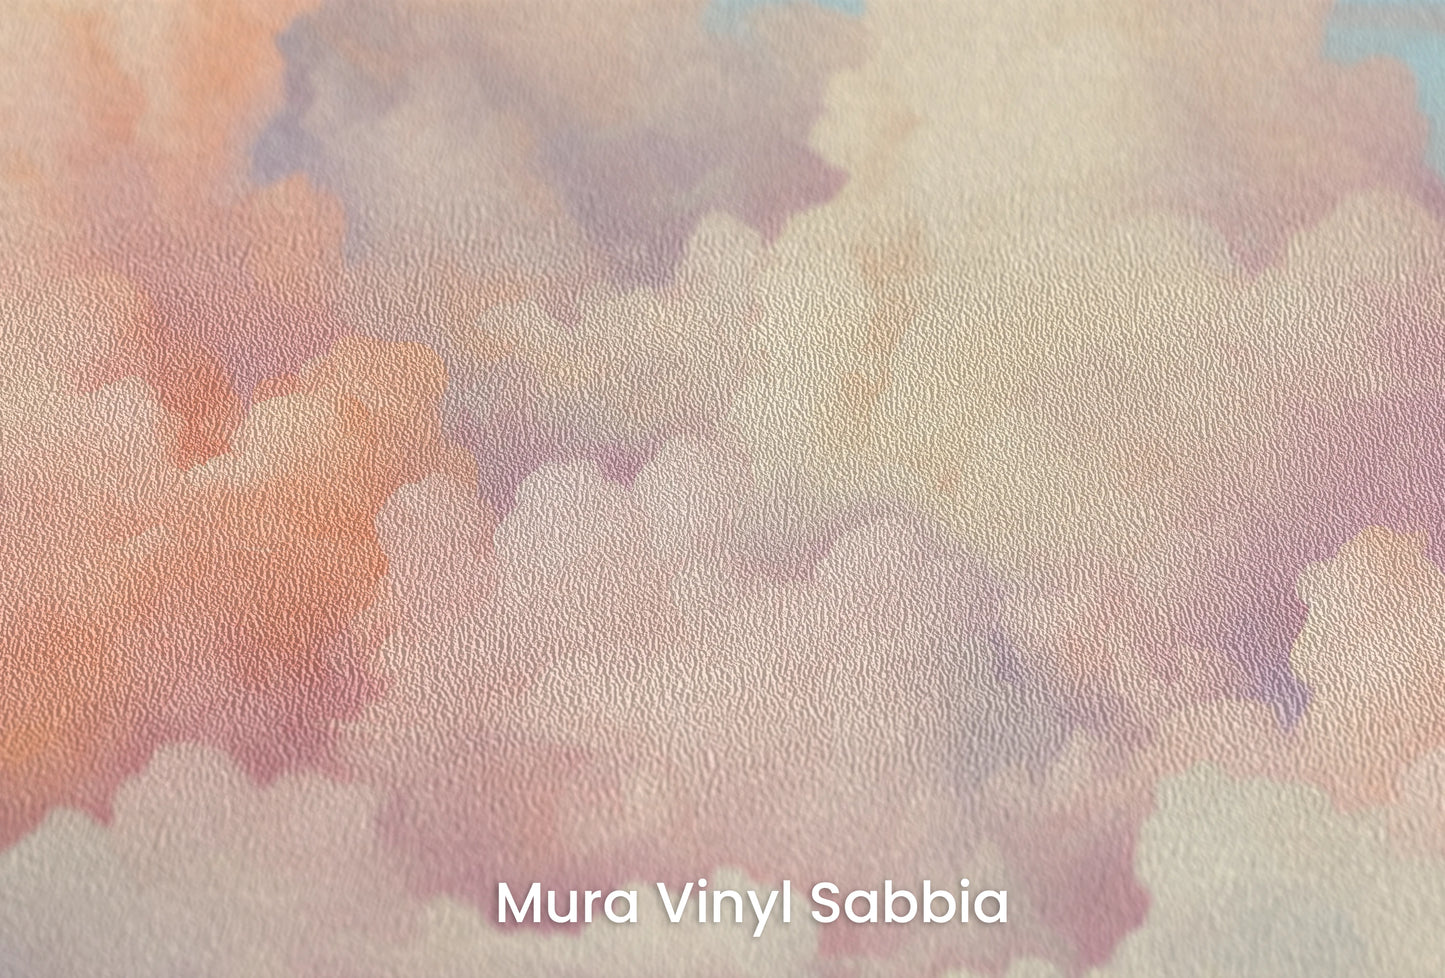 Zbliżenie na artystyczną fototapetę o nazwie Cotton Candy Skies na podłożu Mura Vinyl Sabbia struktura grubego ziarna piasku.